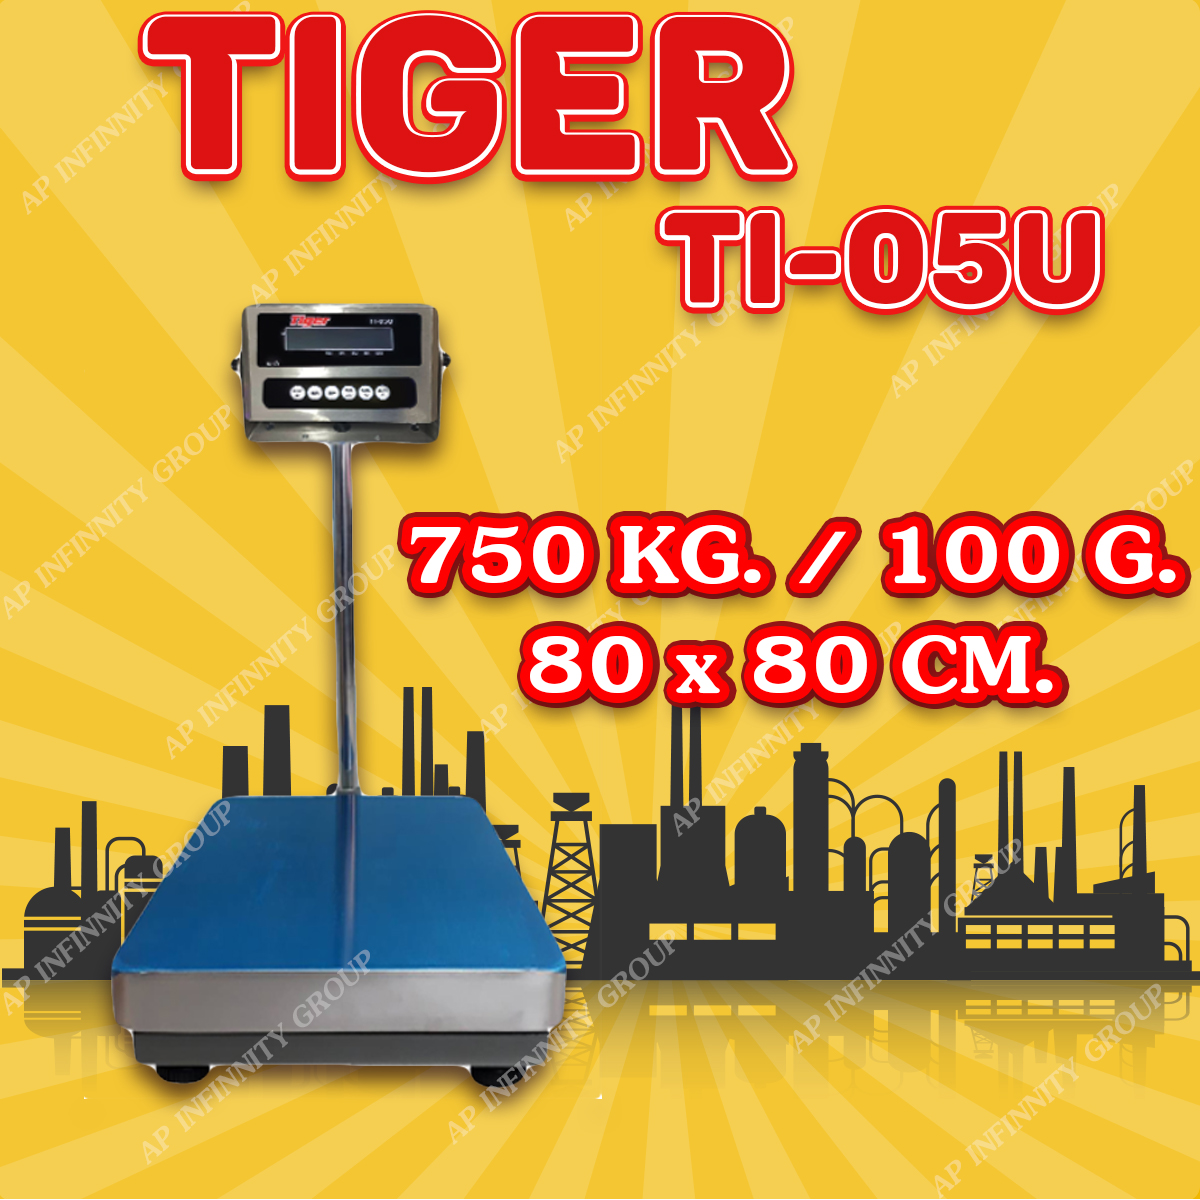 ตาชั่งดิจิตอล เครื่องชั่งดิจิตอล เครื่องชั่งตั้งพื้น 750kg ความละเอียด 100g ยี่ห้อ Tiger รุ่น TI–05U แท่นชั่งขนาดฐาน 80x80cm มีช่อง USB สำหรับการบันทึกข้อมูลได้ รูปที่ 1